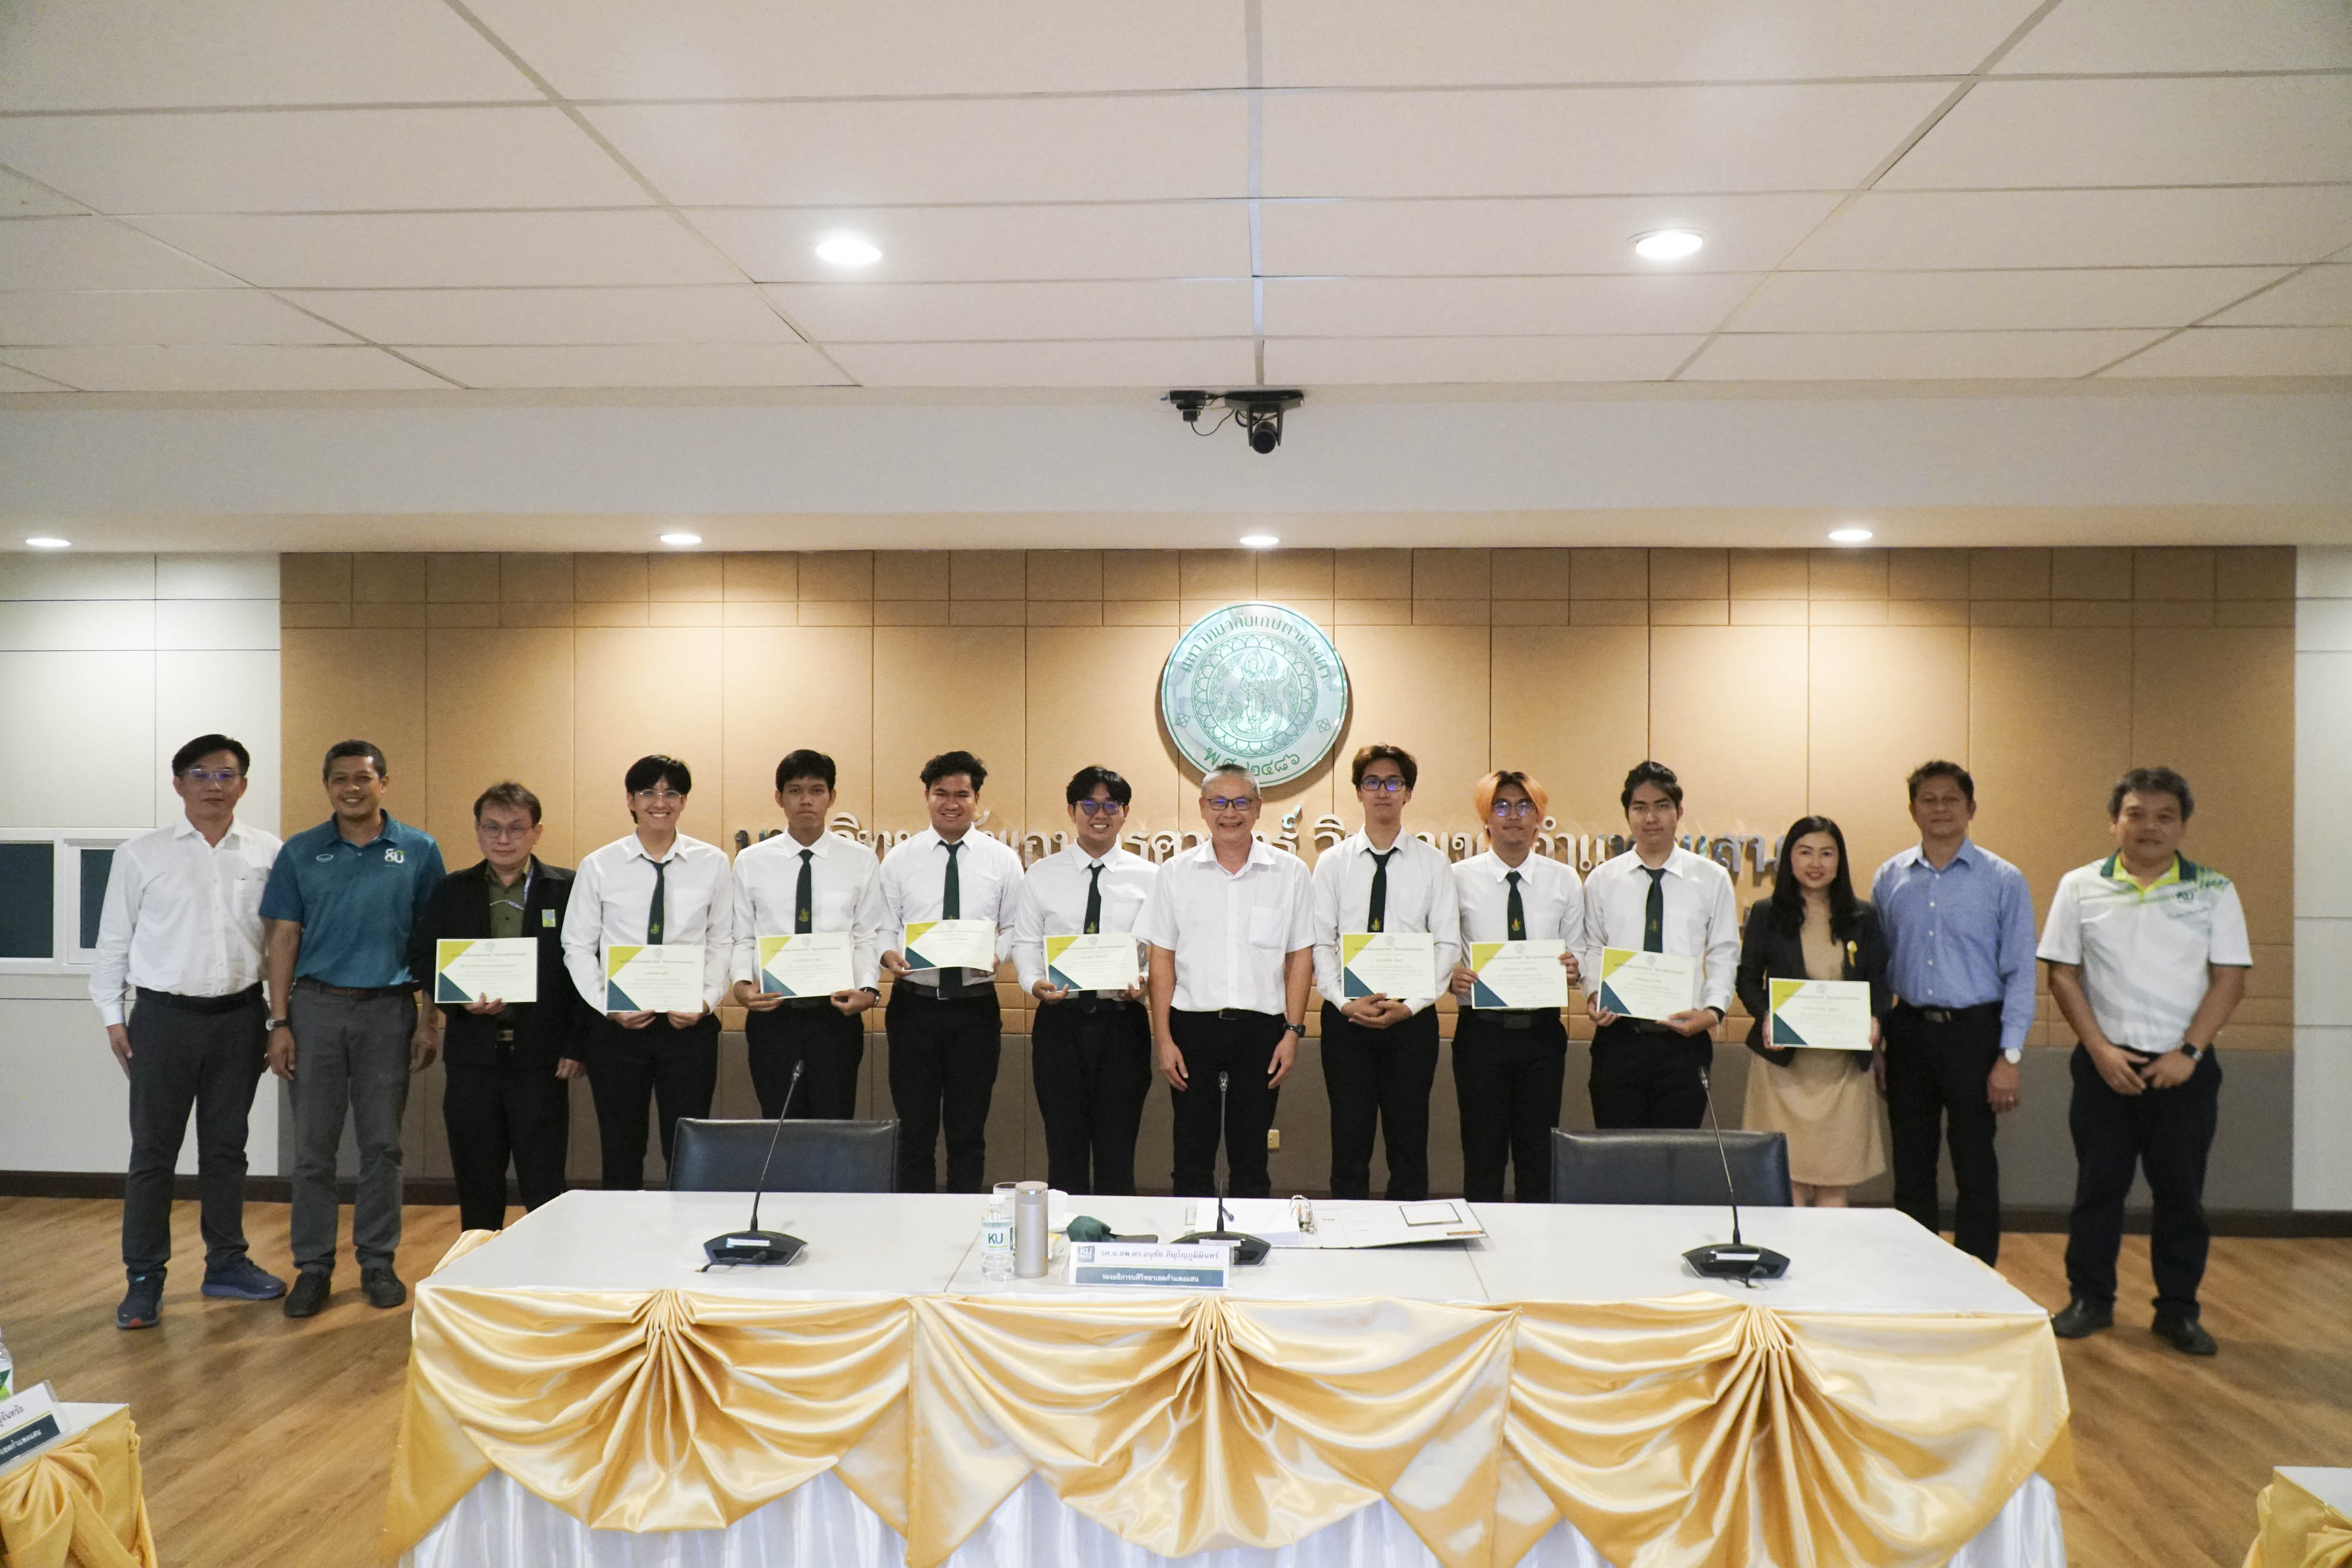 มก.กพส. มอบเกียรติบัตรเชิดชูเกียรติแก่คณะอาจารย์และนิสิตในโอกาสได้รับรางวัลชนะเลิศโครงการประกวดสิ่งประดิษฐ์และนวัตกรรม Thailand New Gen Inventors Award 2024 (I-New Gen Award 2024) ระดับอุดมศึกษา